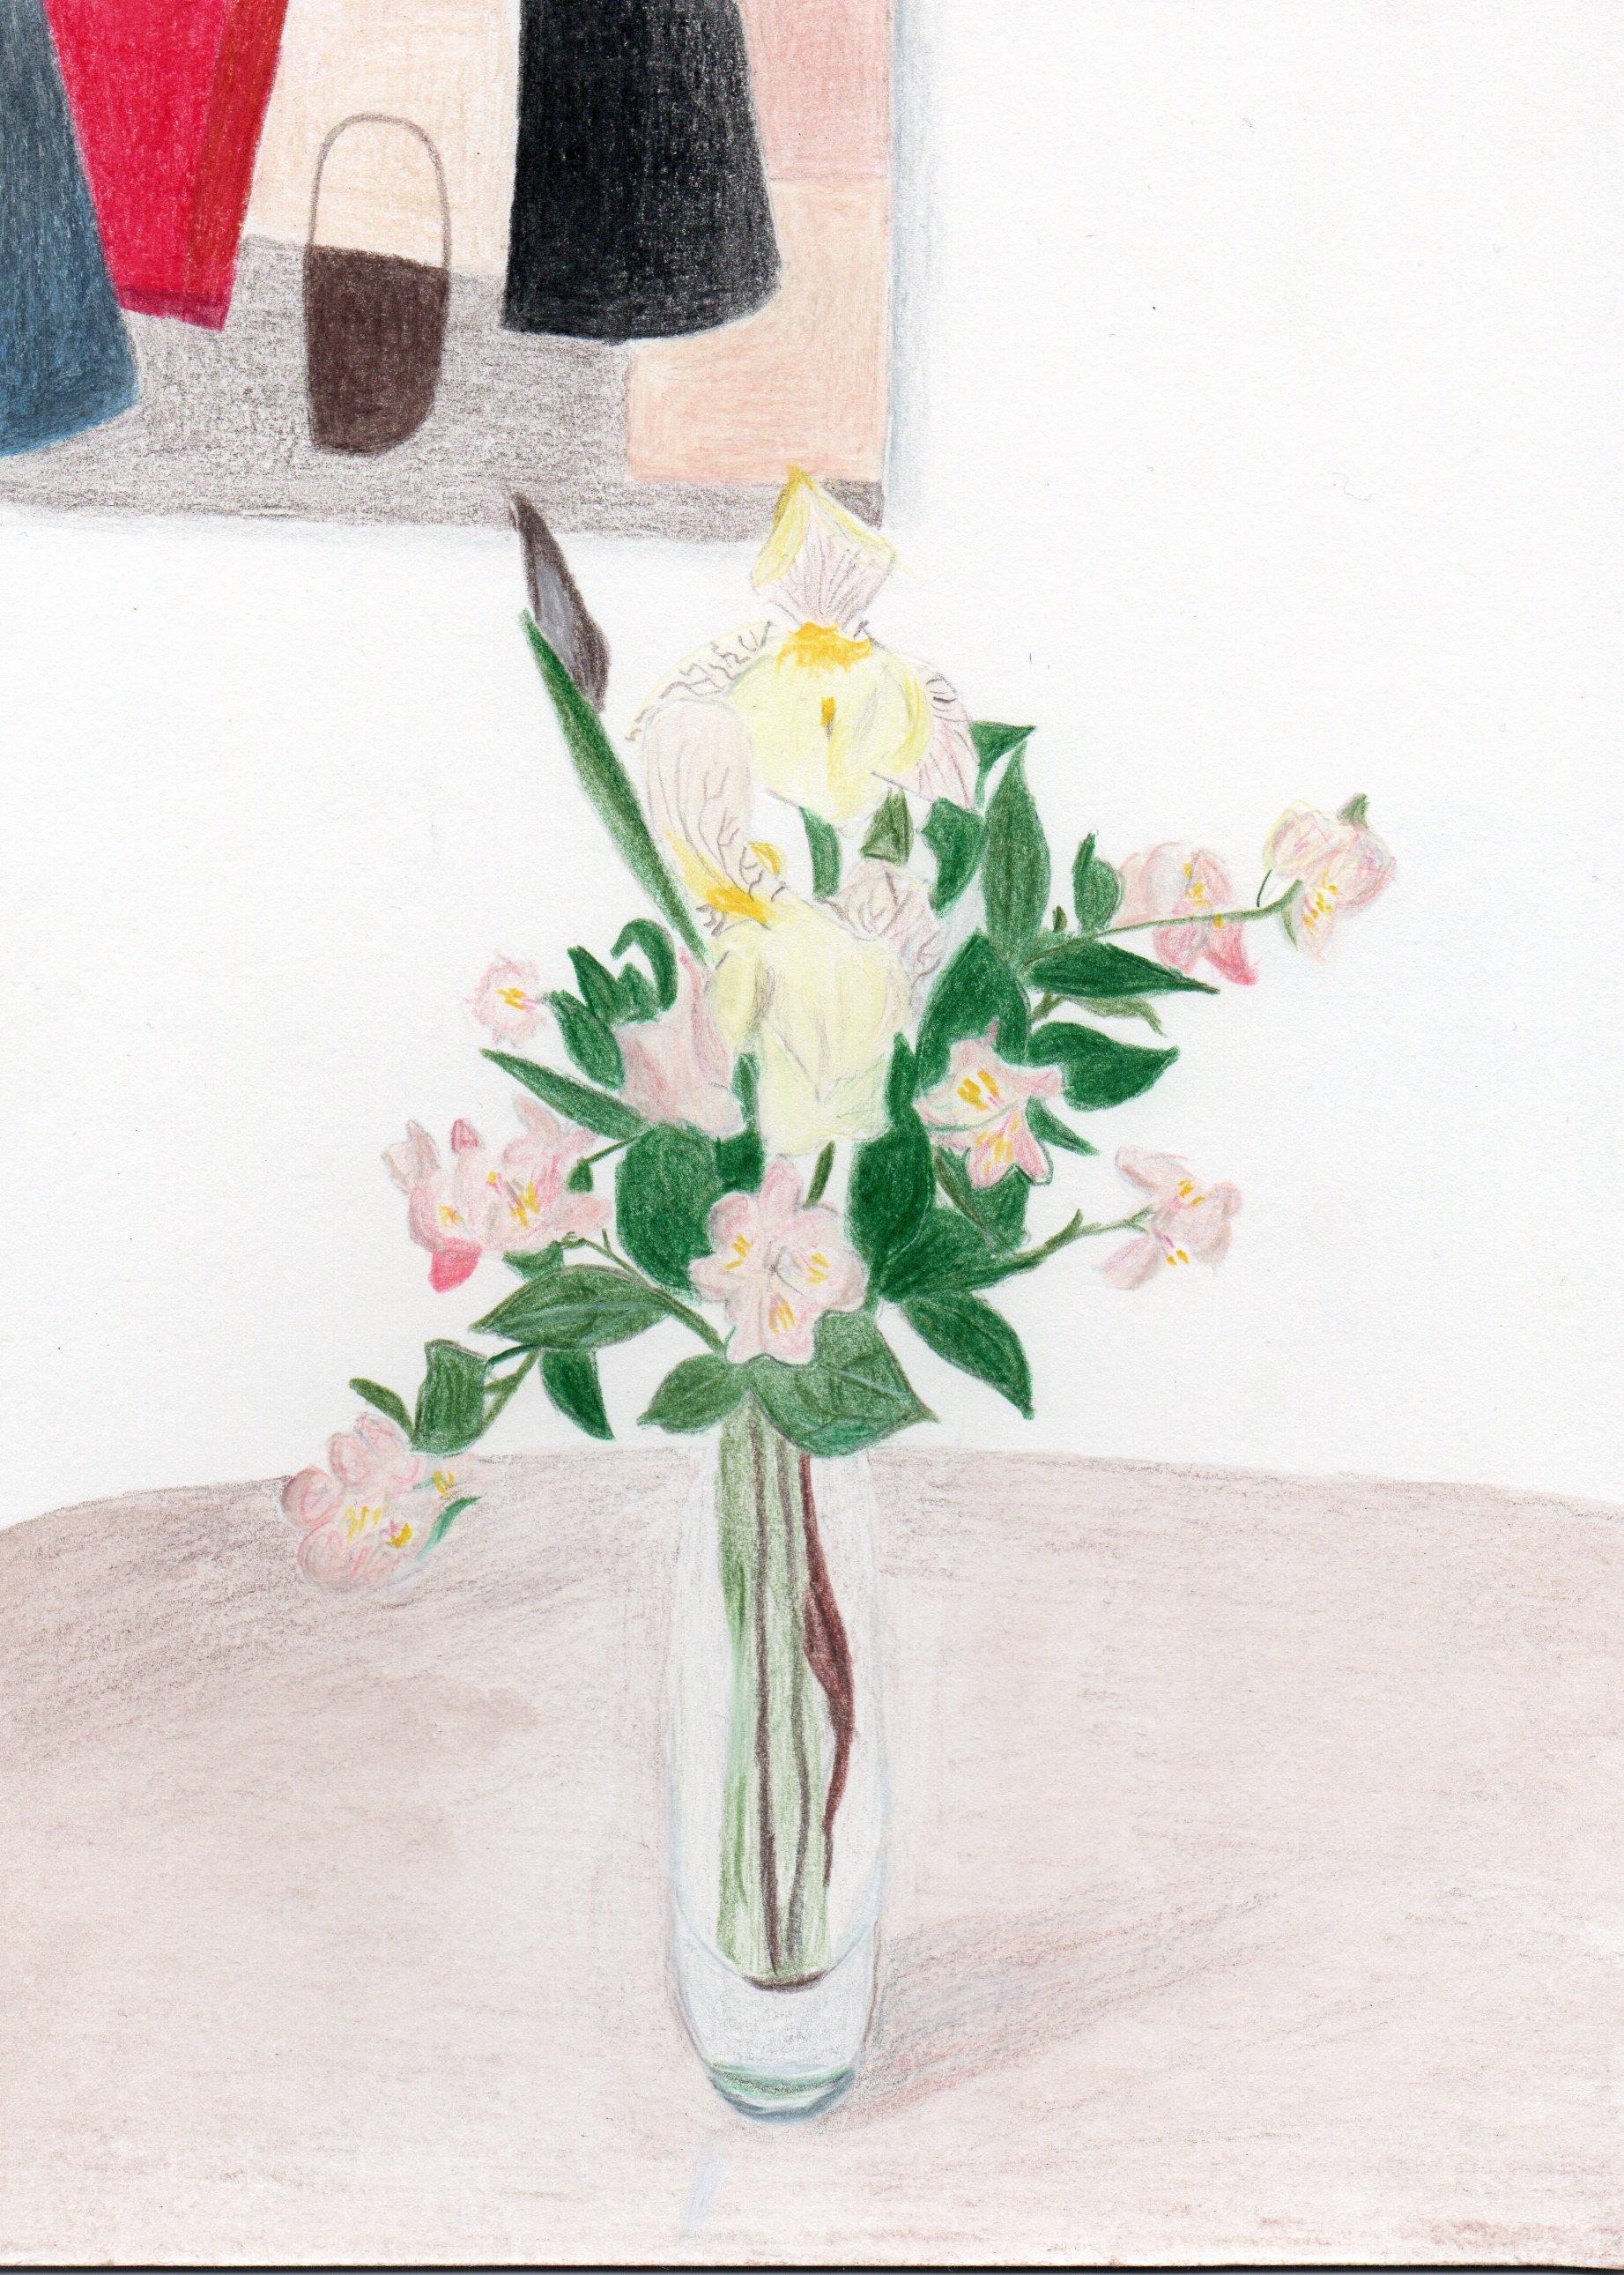 Seringa mit Vase – Bunte Bleistifte, Blumen, Inneneinrichtung